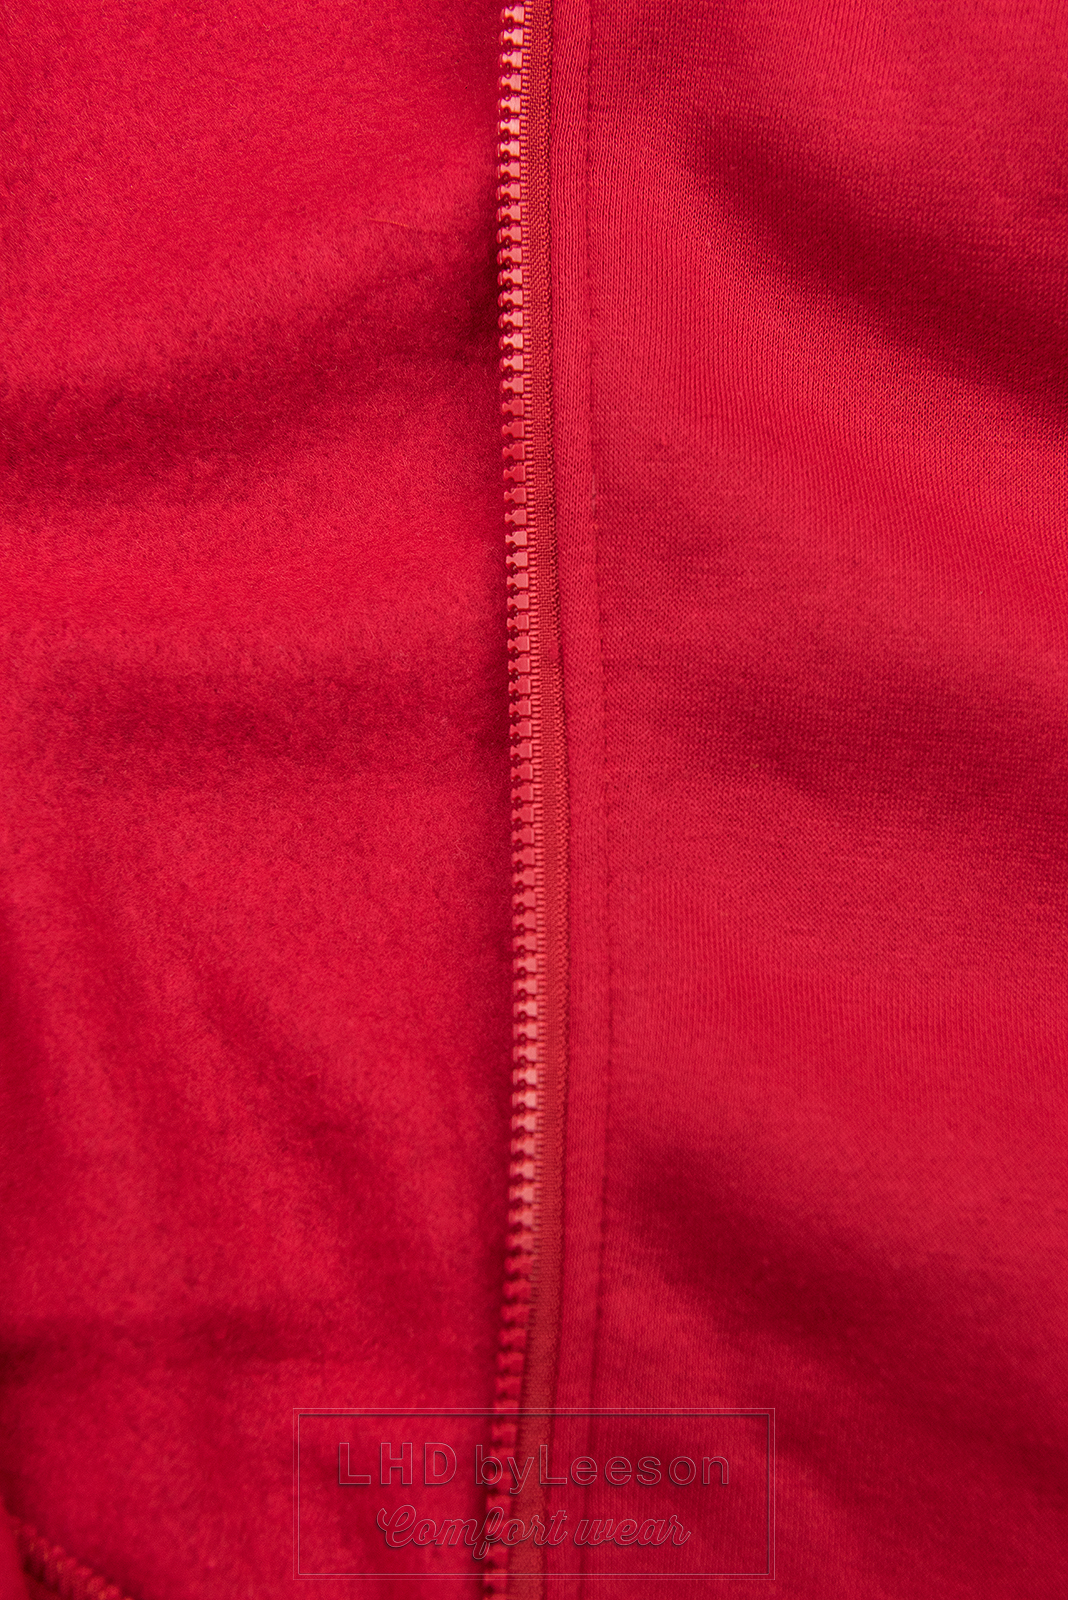 Czerwona długa bluza z kapturem